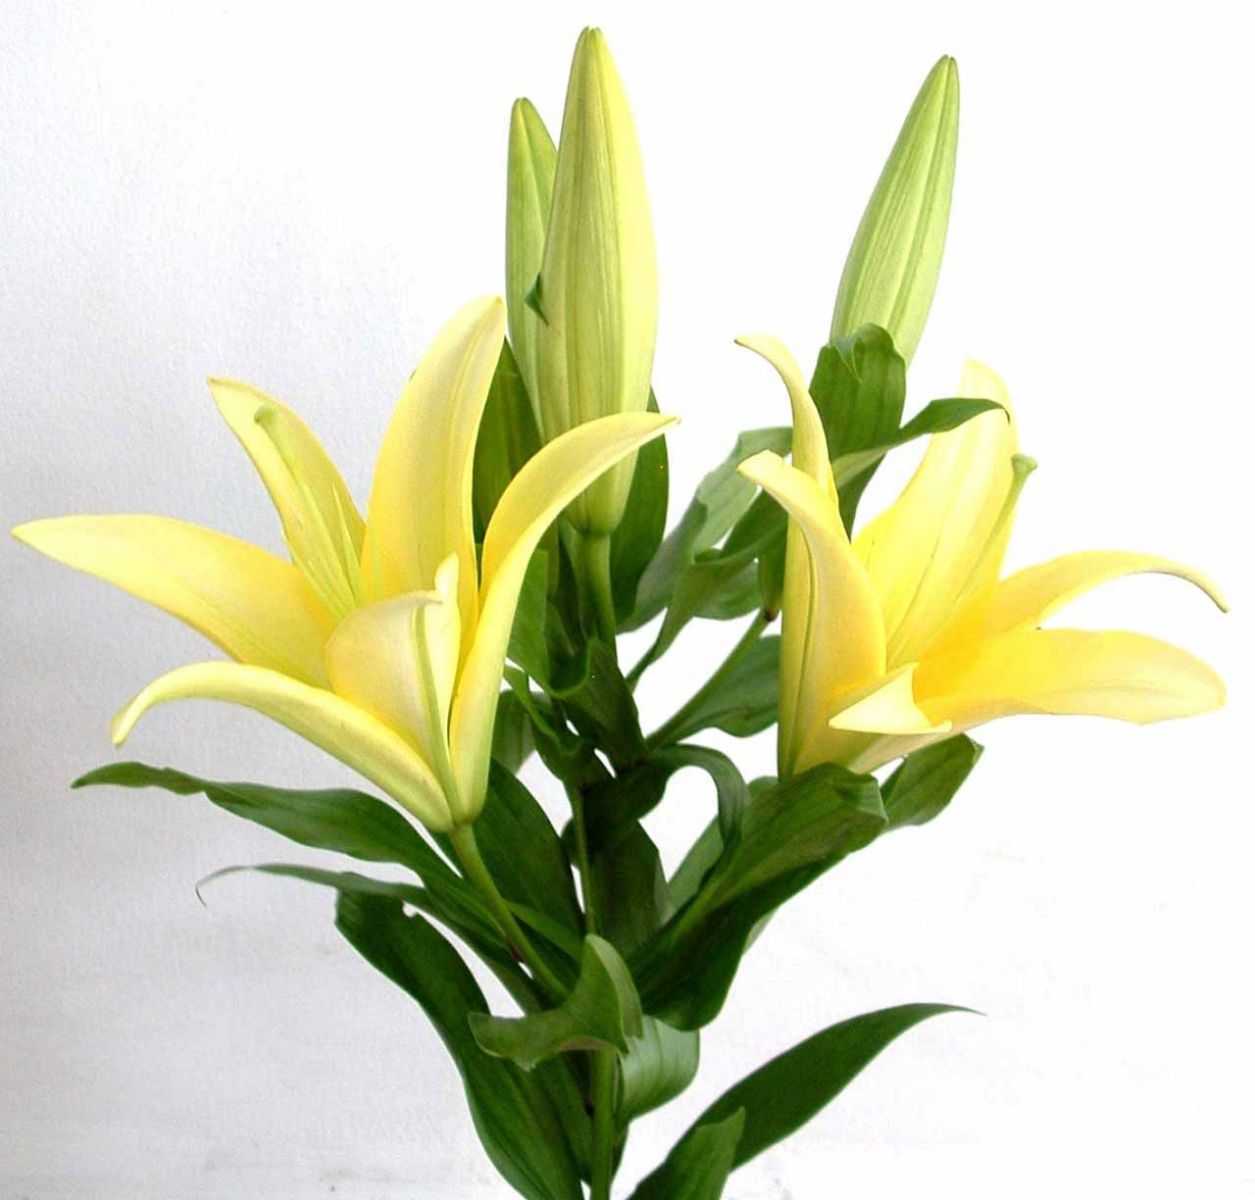 Sắc hoa tông màu vàng hoặc màu xanh nhạt có ý nghĩa phong thủy trong việc cải thiện mối quan hệ mẹ chồng nàng dâu